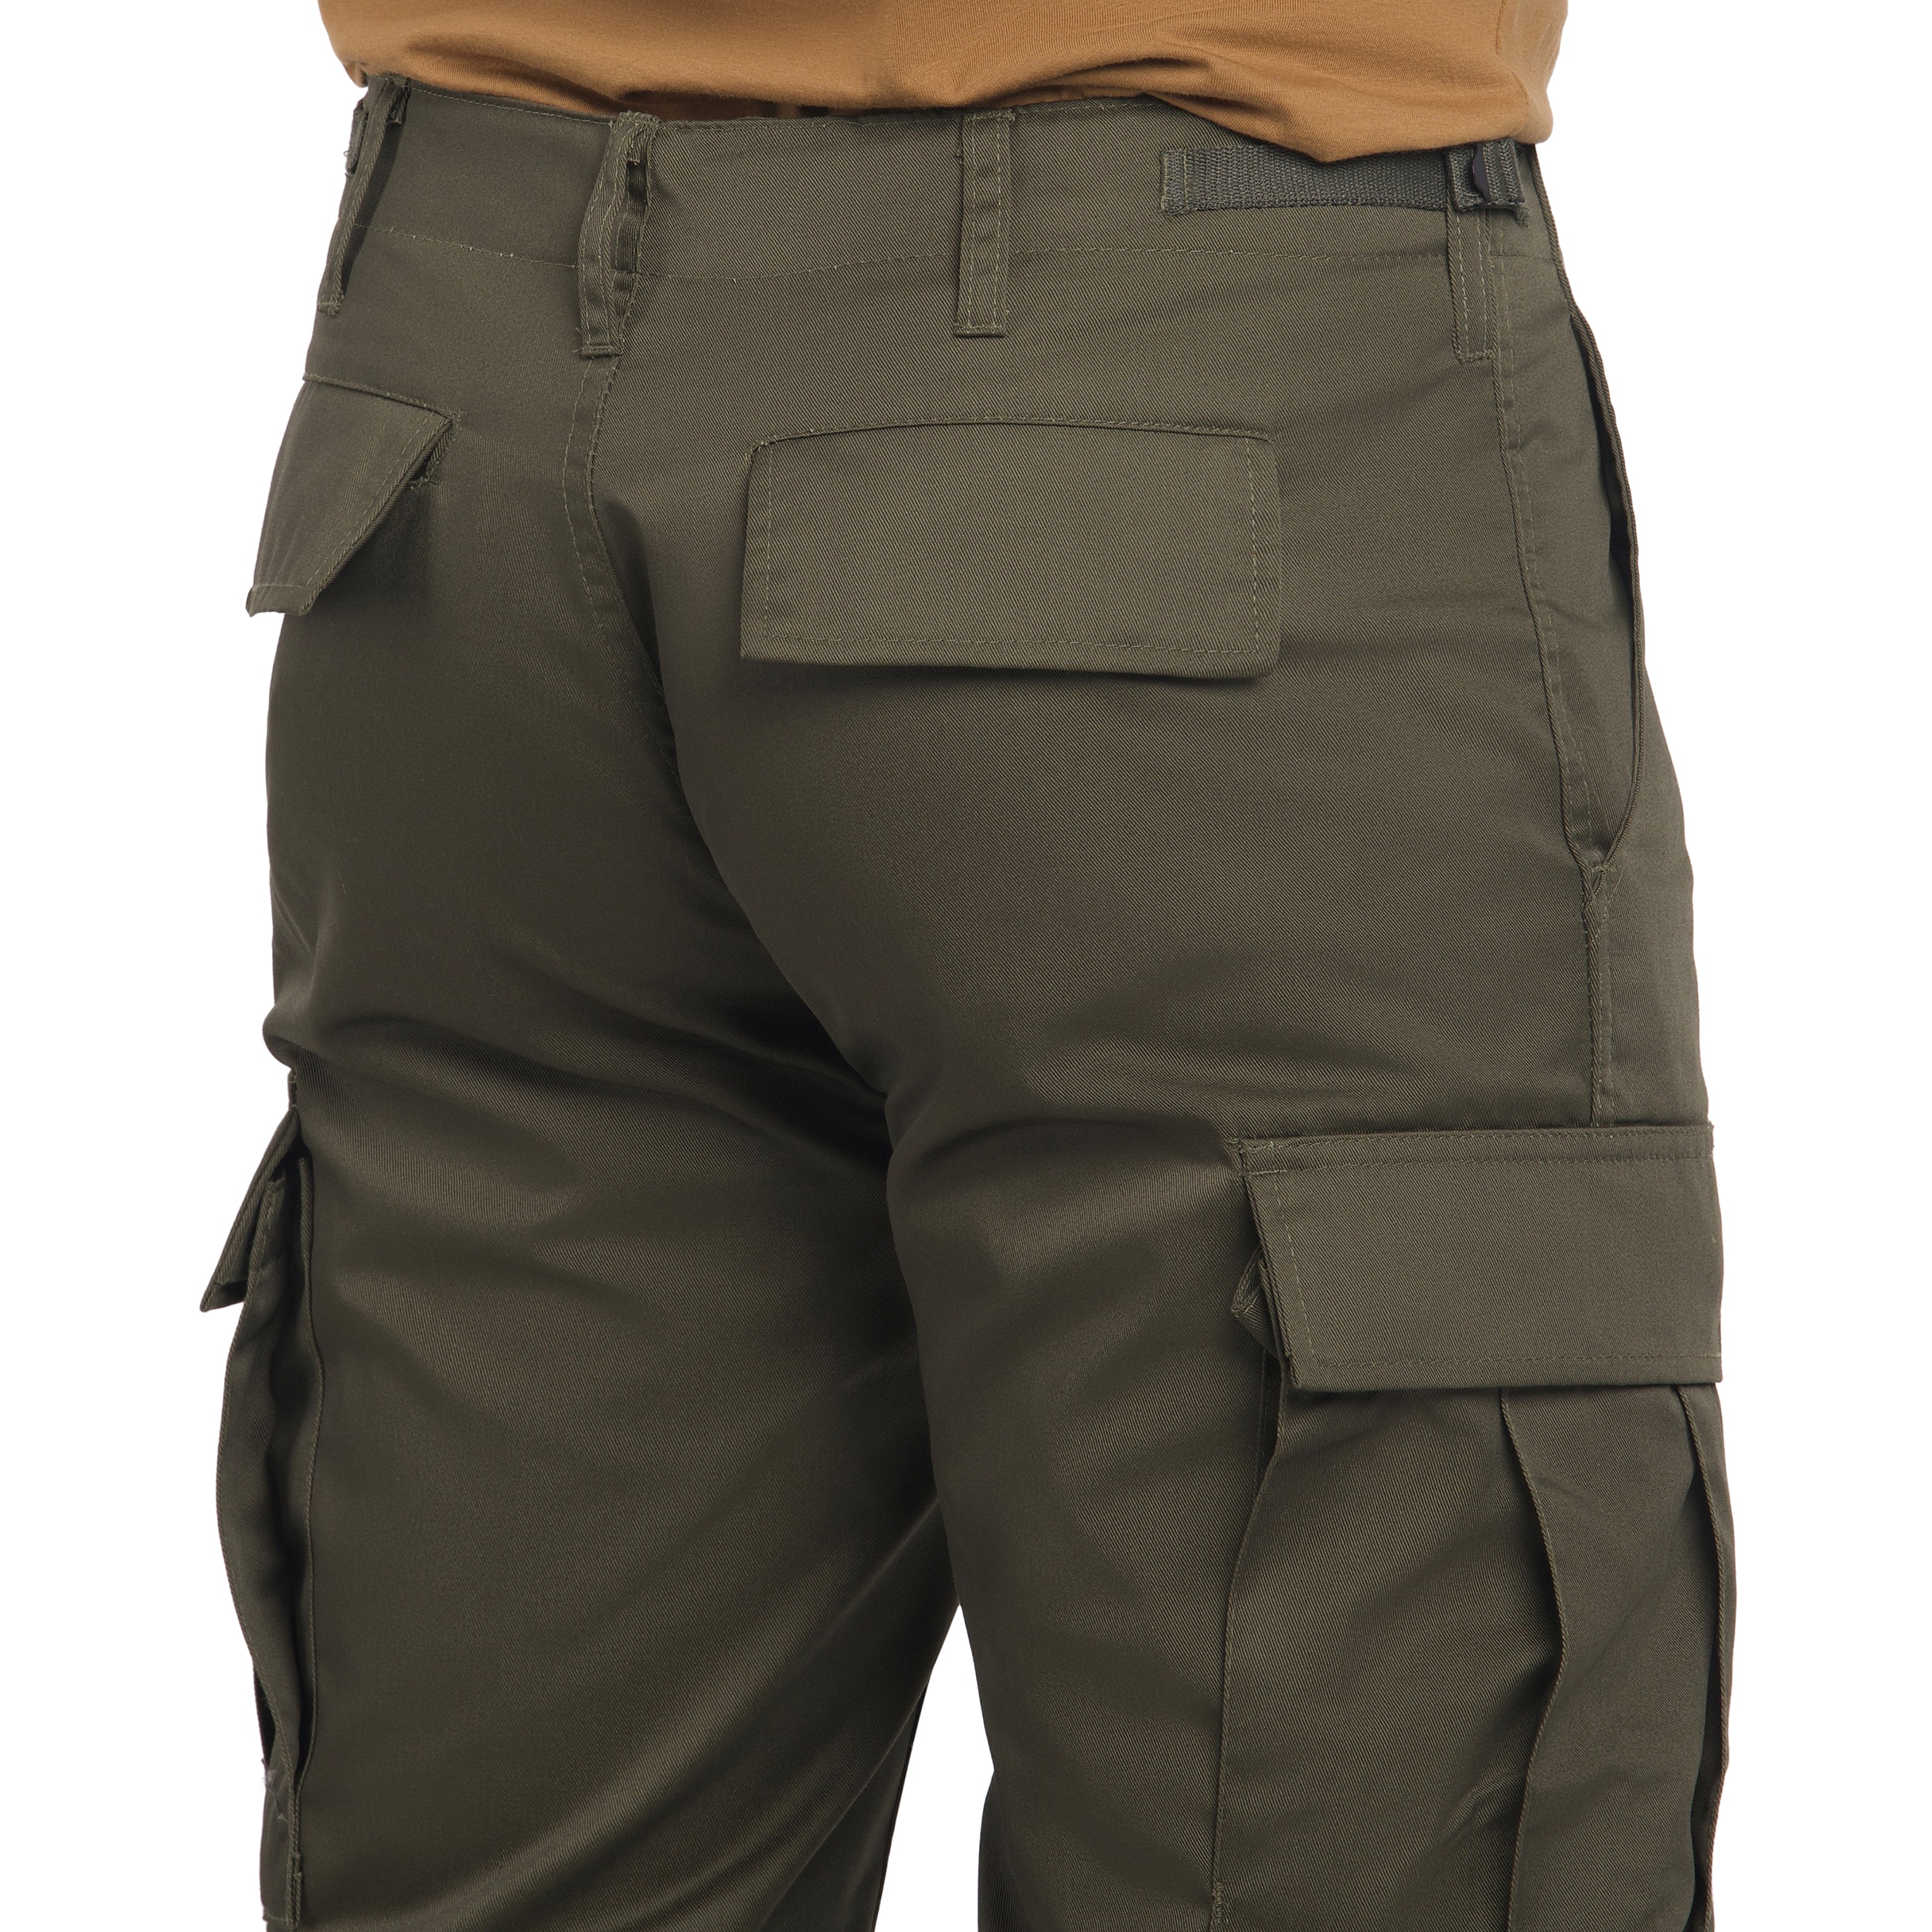 Spodnie wojskowe Mil-Tec US Ranger BDU Straight Cut - Olive